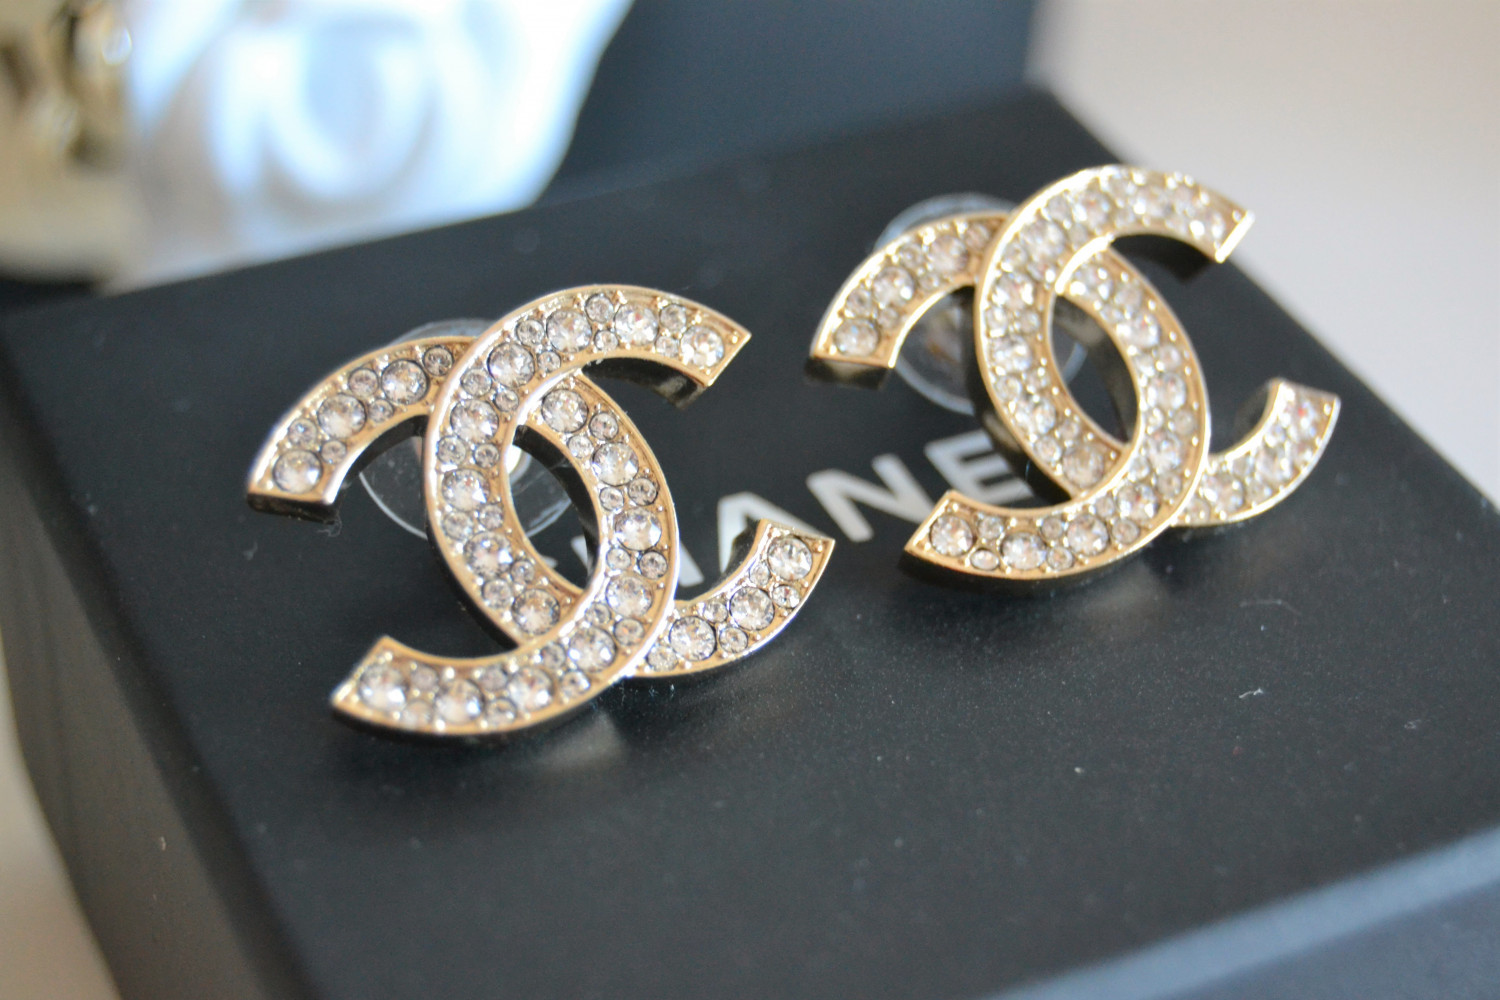 New in: Chanel earrings! | TheNormcoreRebel